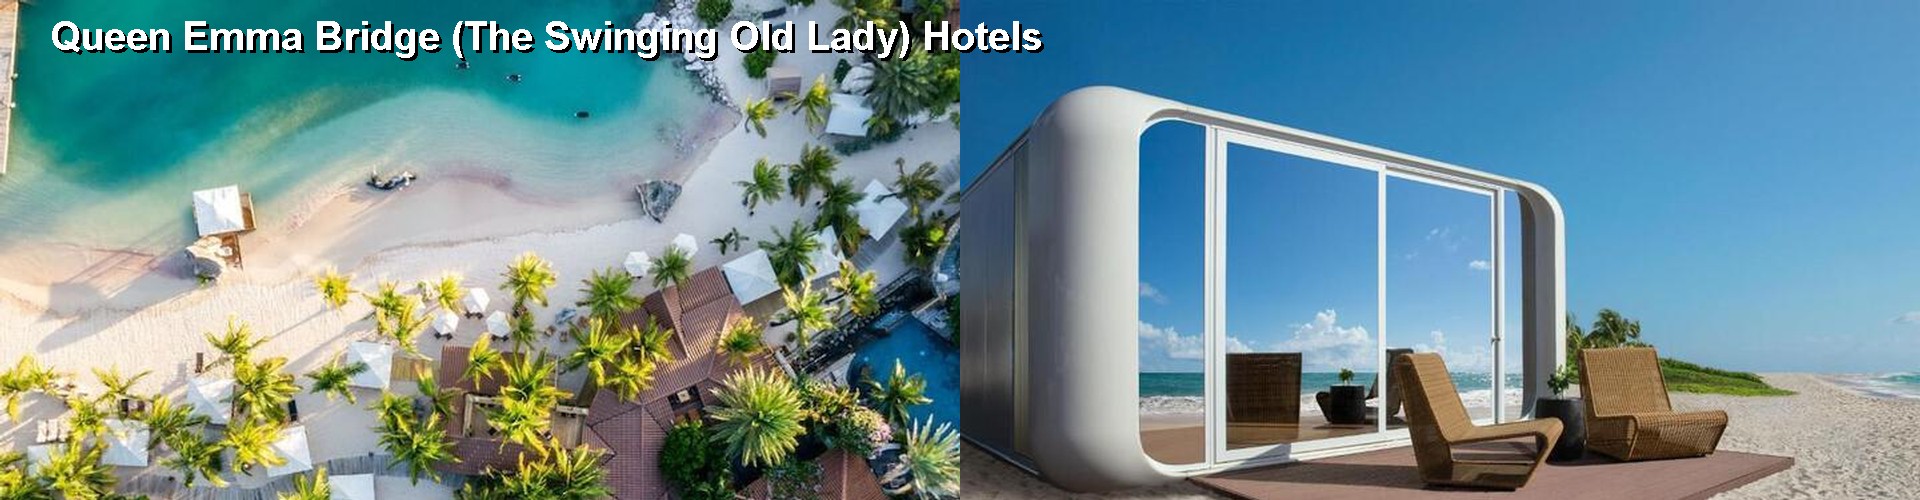 5 Best Hotels near Queen Emma Bridge (The Swinging Old Lady)